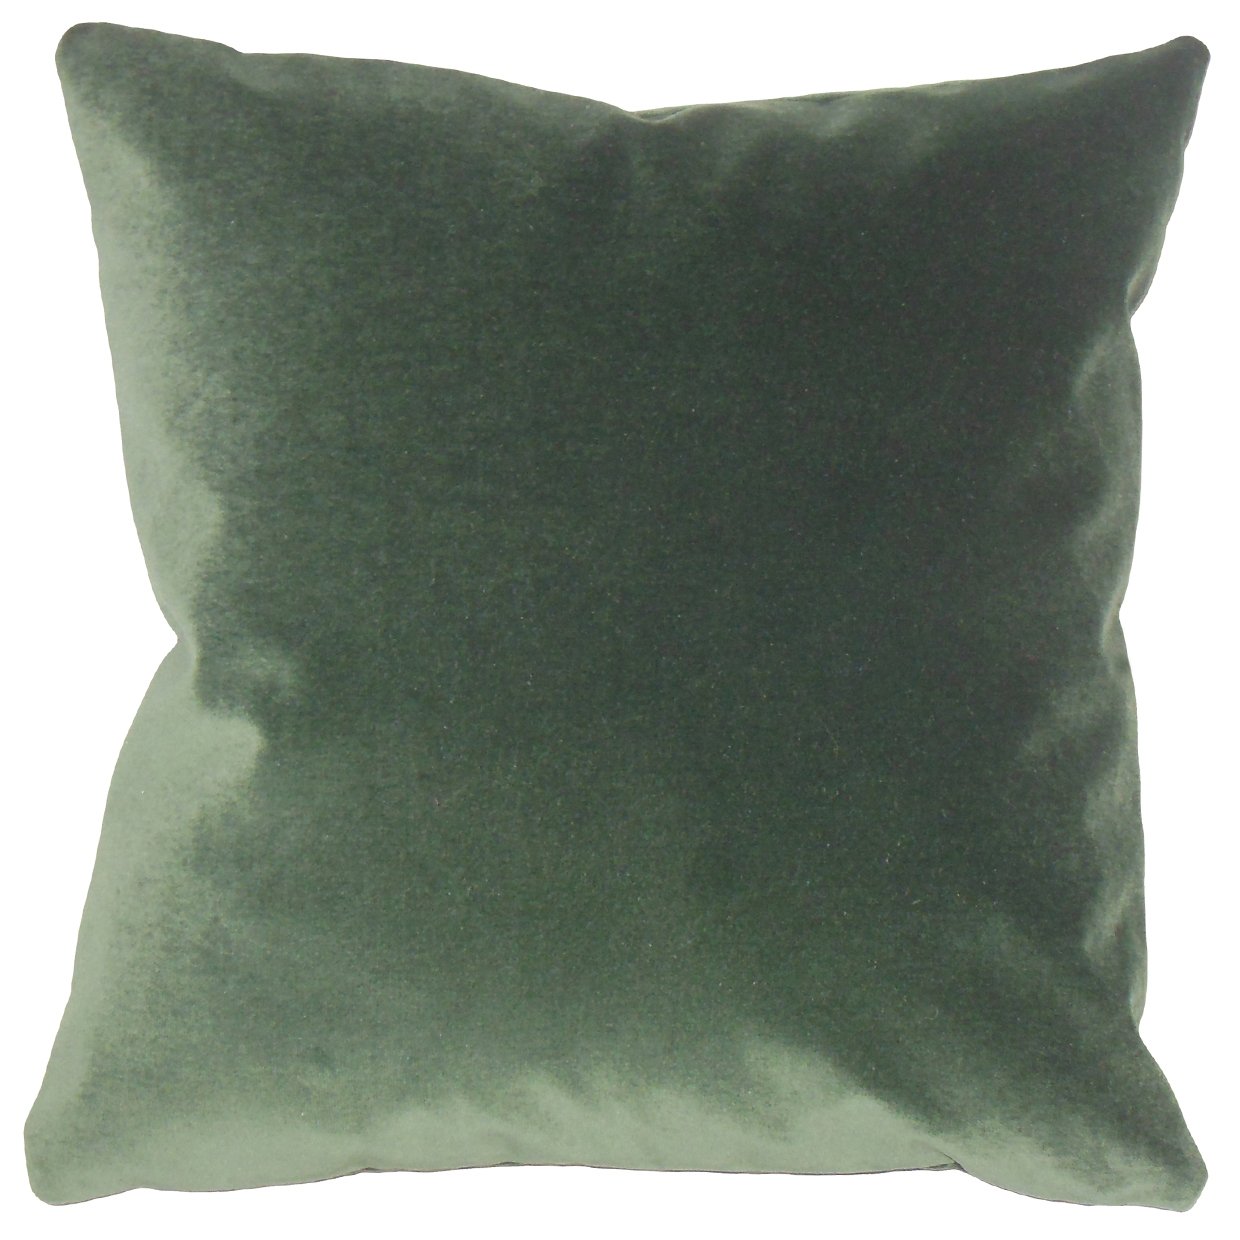 Vert Pillow, 20" x 20" w/ poly insert - Image 0